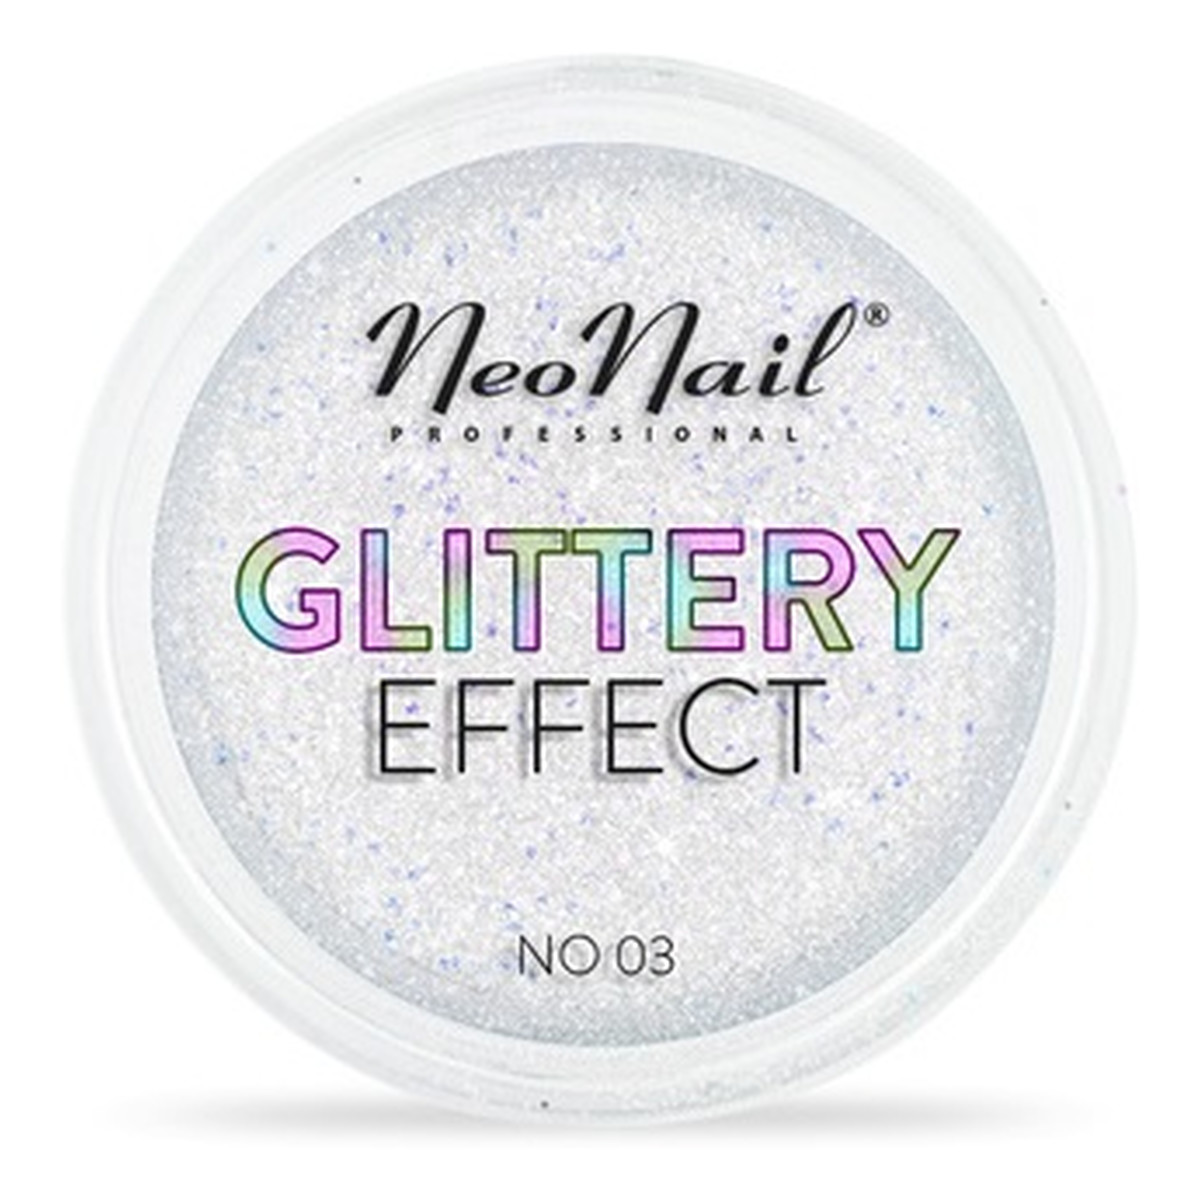 NeoNail Glittery Effect Pyłek Do Stylizacji Paznokci 2g